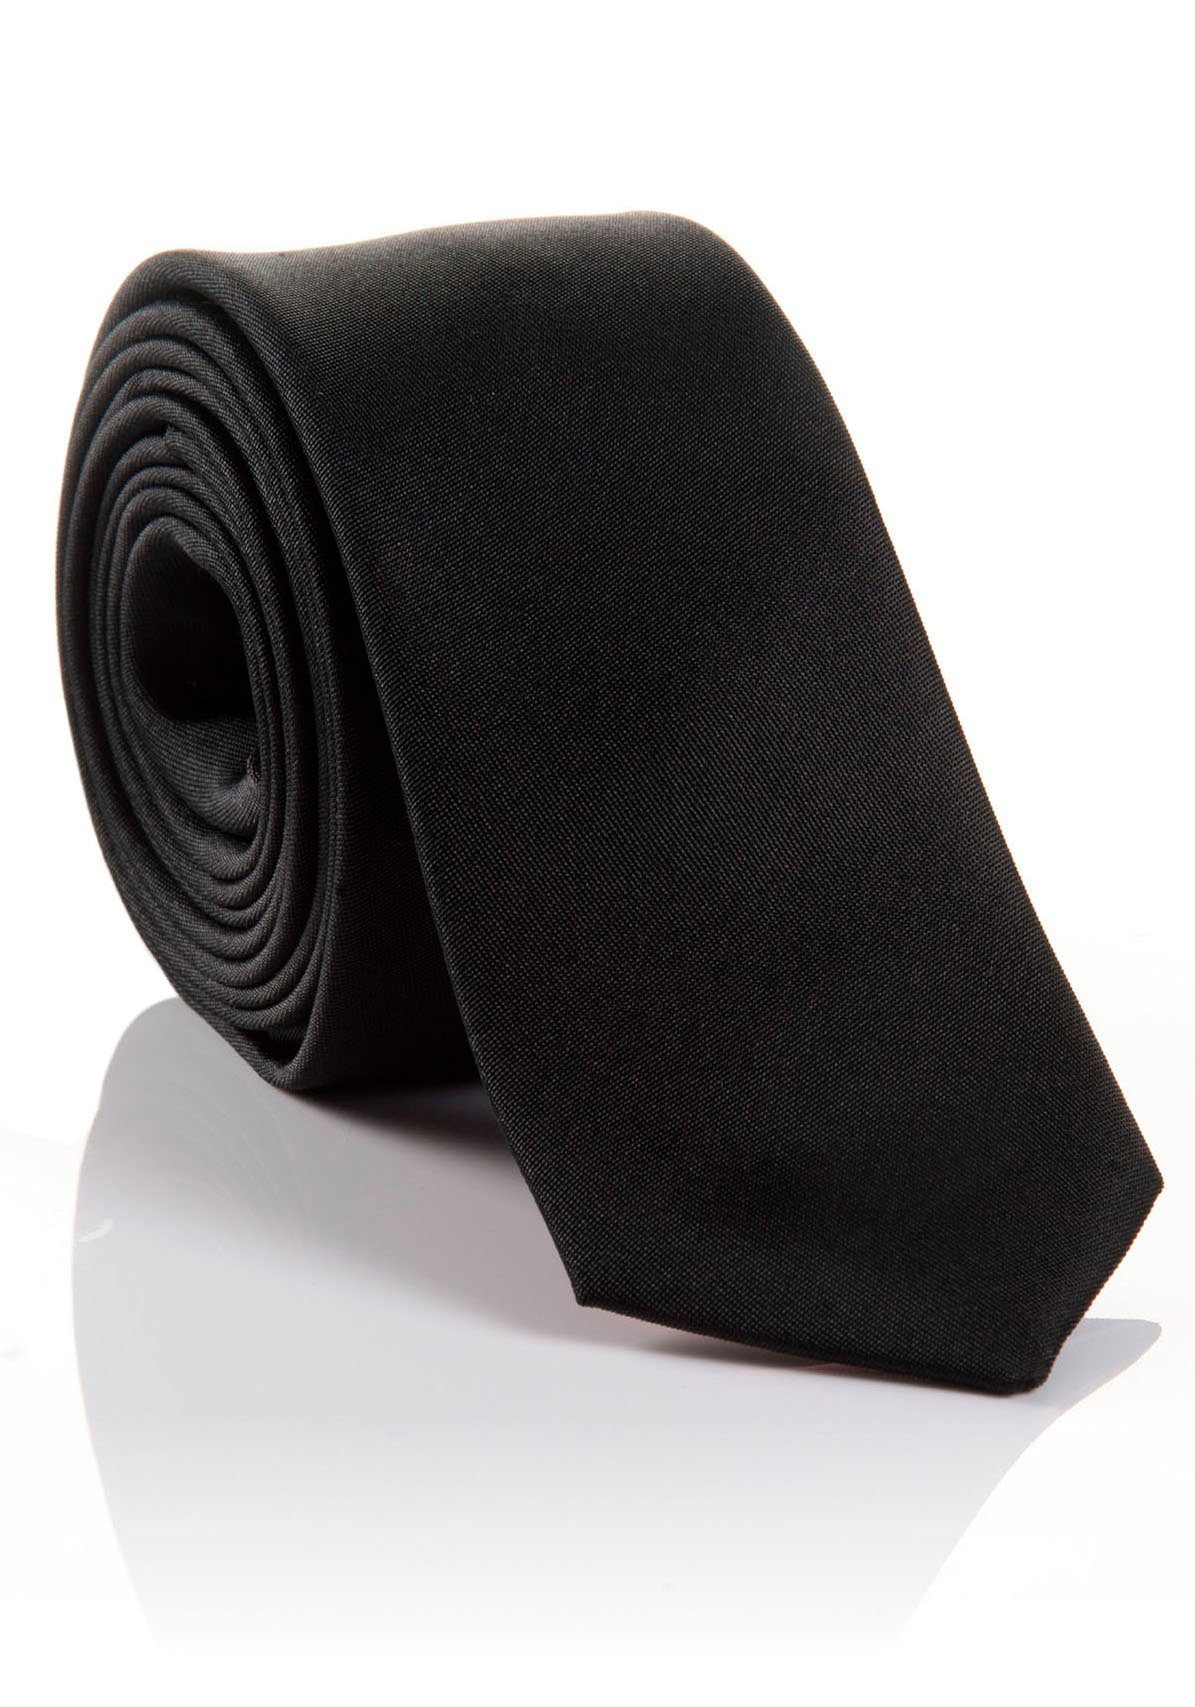 MONTI Krawatte LORENZO Hochwertig verarbeitete mit hohem black Seidenkrawatte Tragekomfort